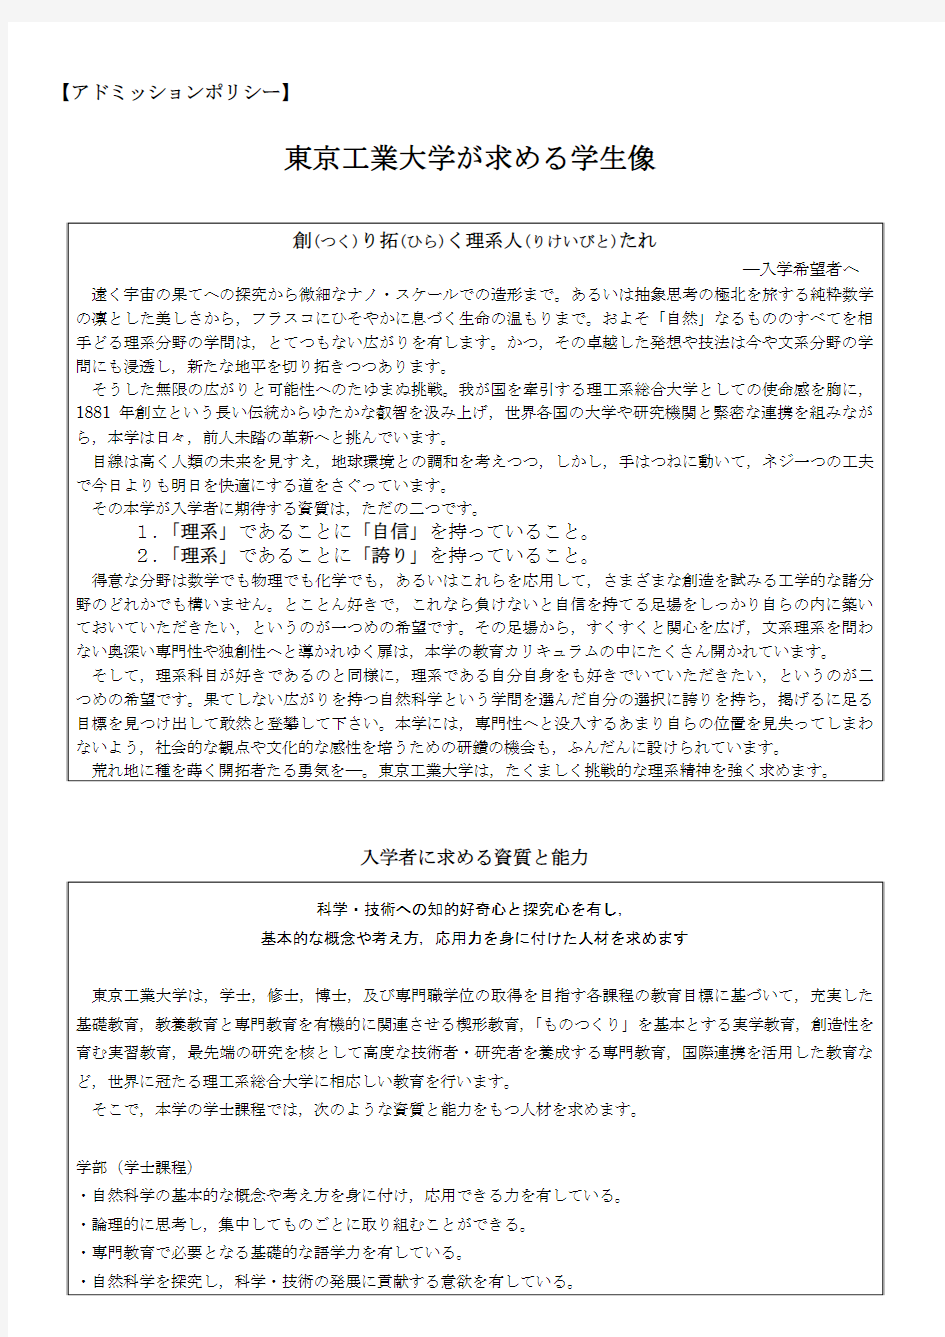 平成27年(2015年)东京工业大学私费外国人留学生入学考试募集要项